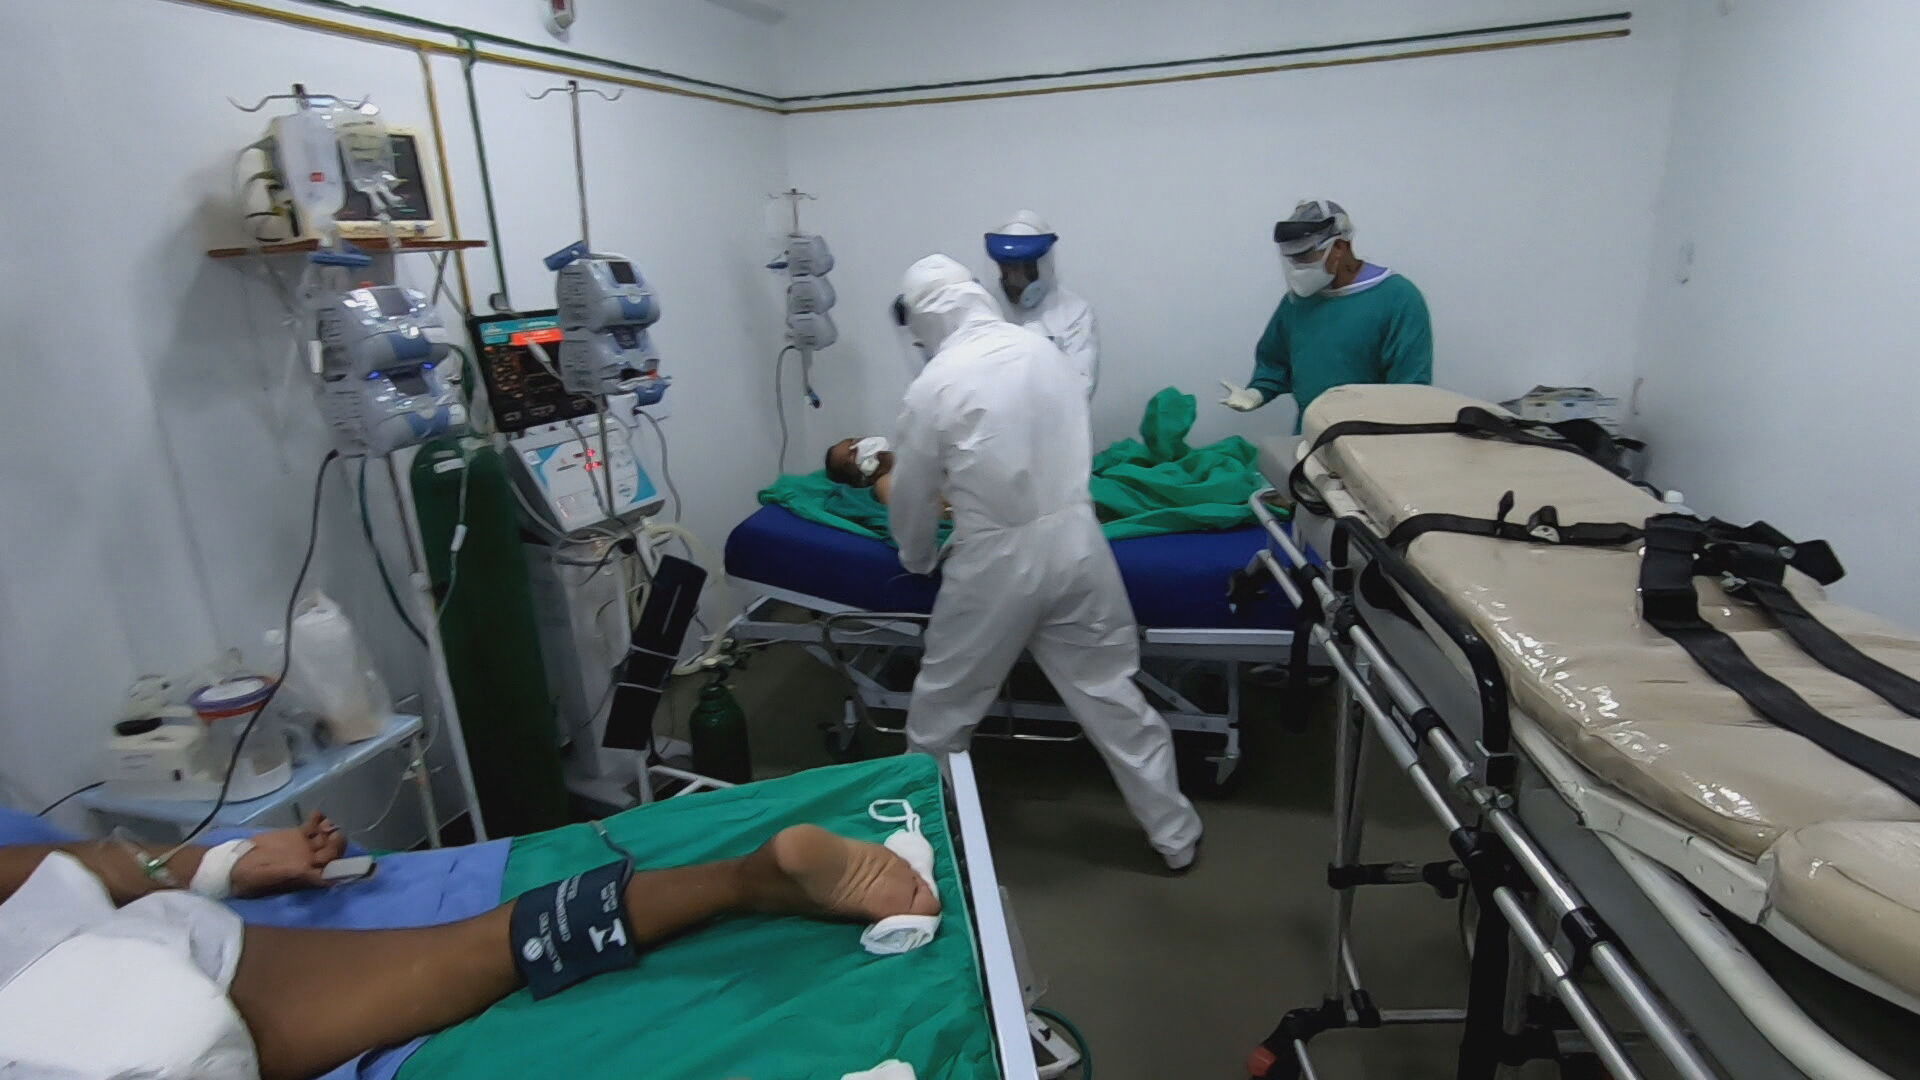 Luta pela vida nos hospitais do Amazonas no tratamento a pacientes com COVID-19